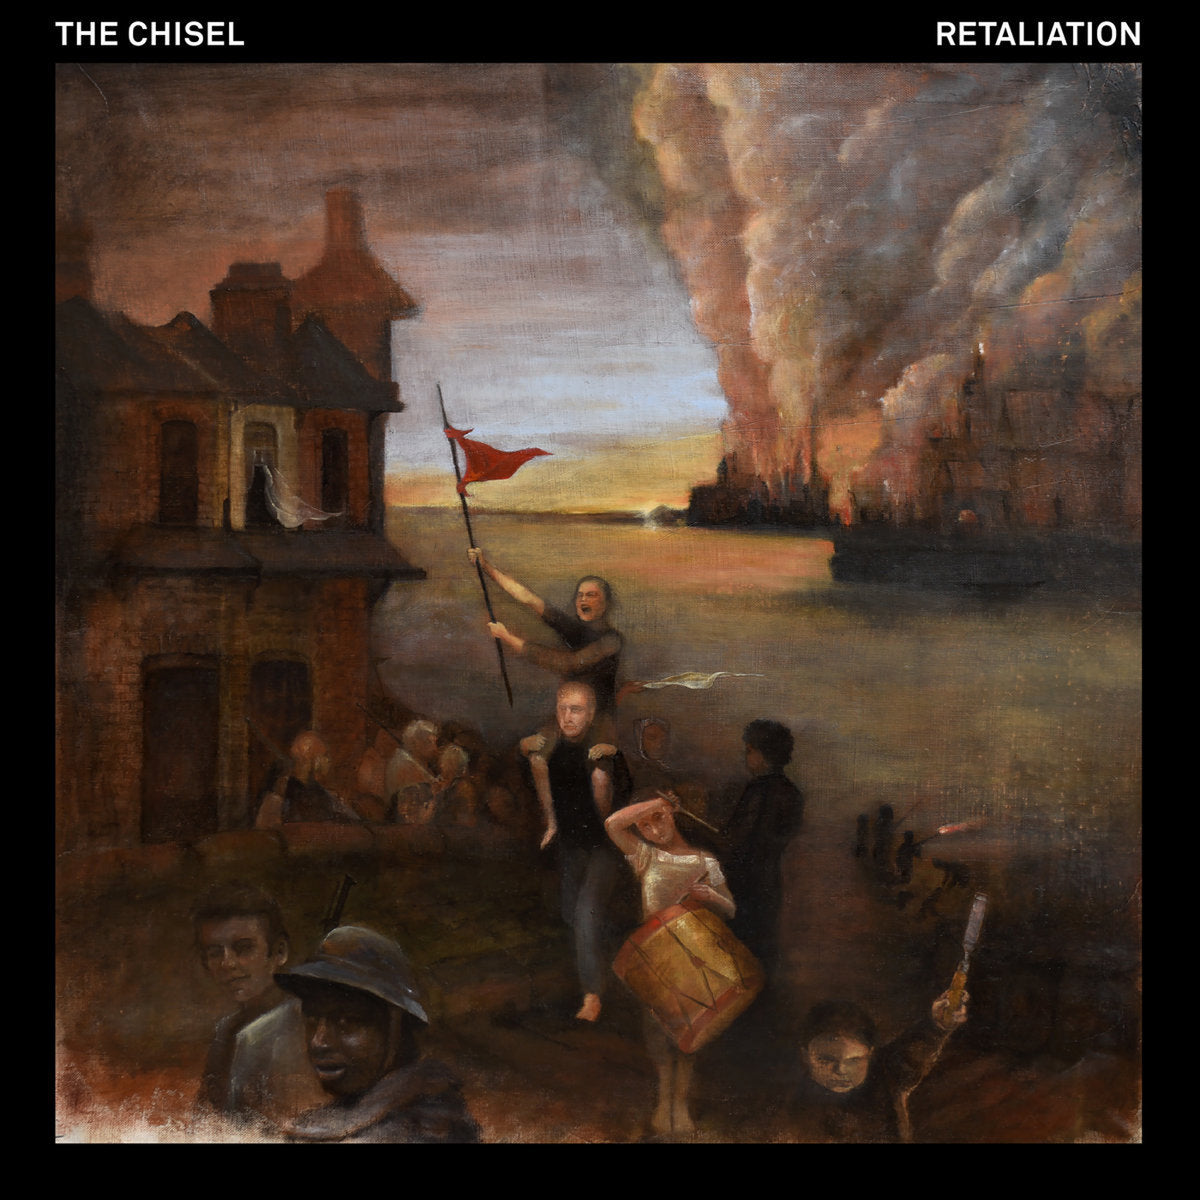 THE CHISEL "Retaliation" LP